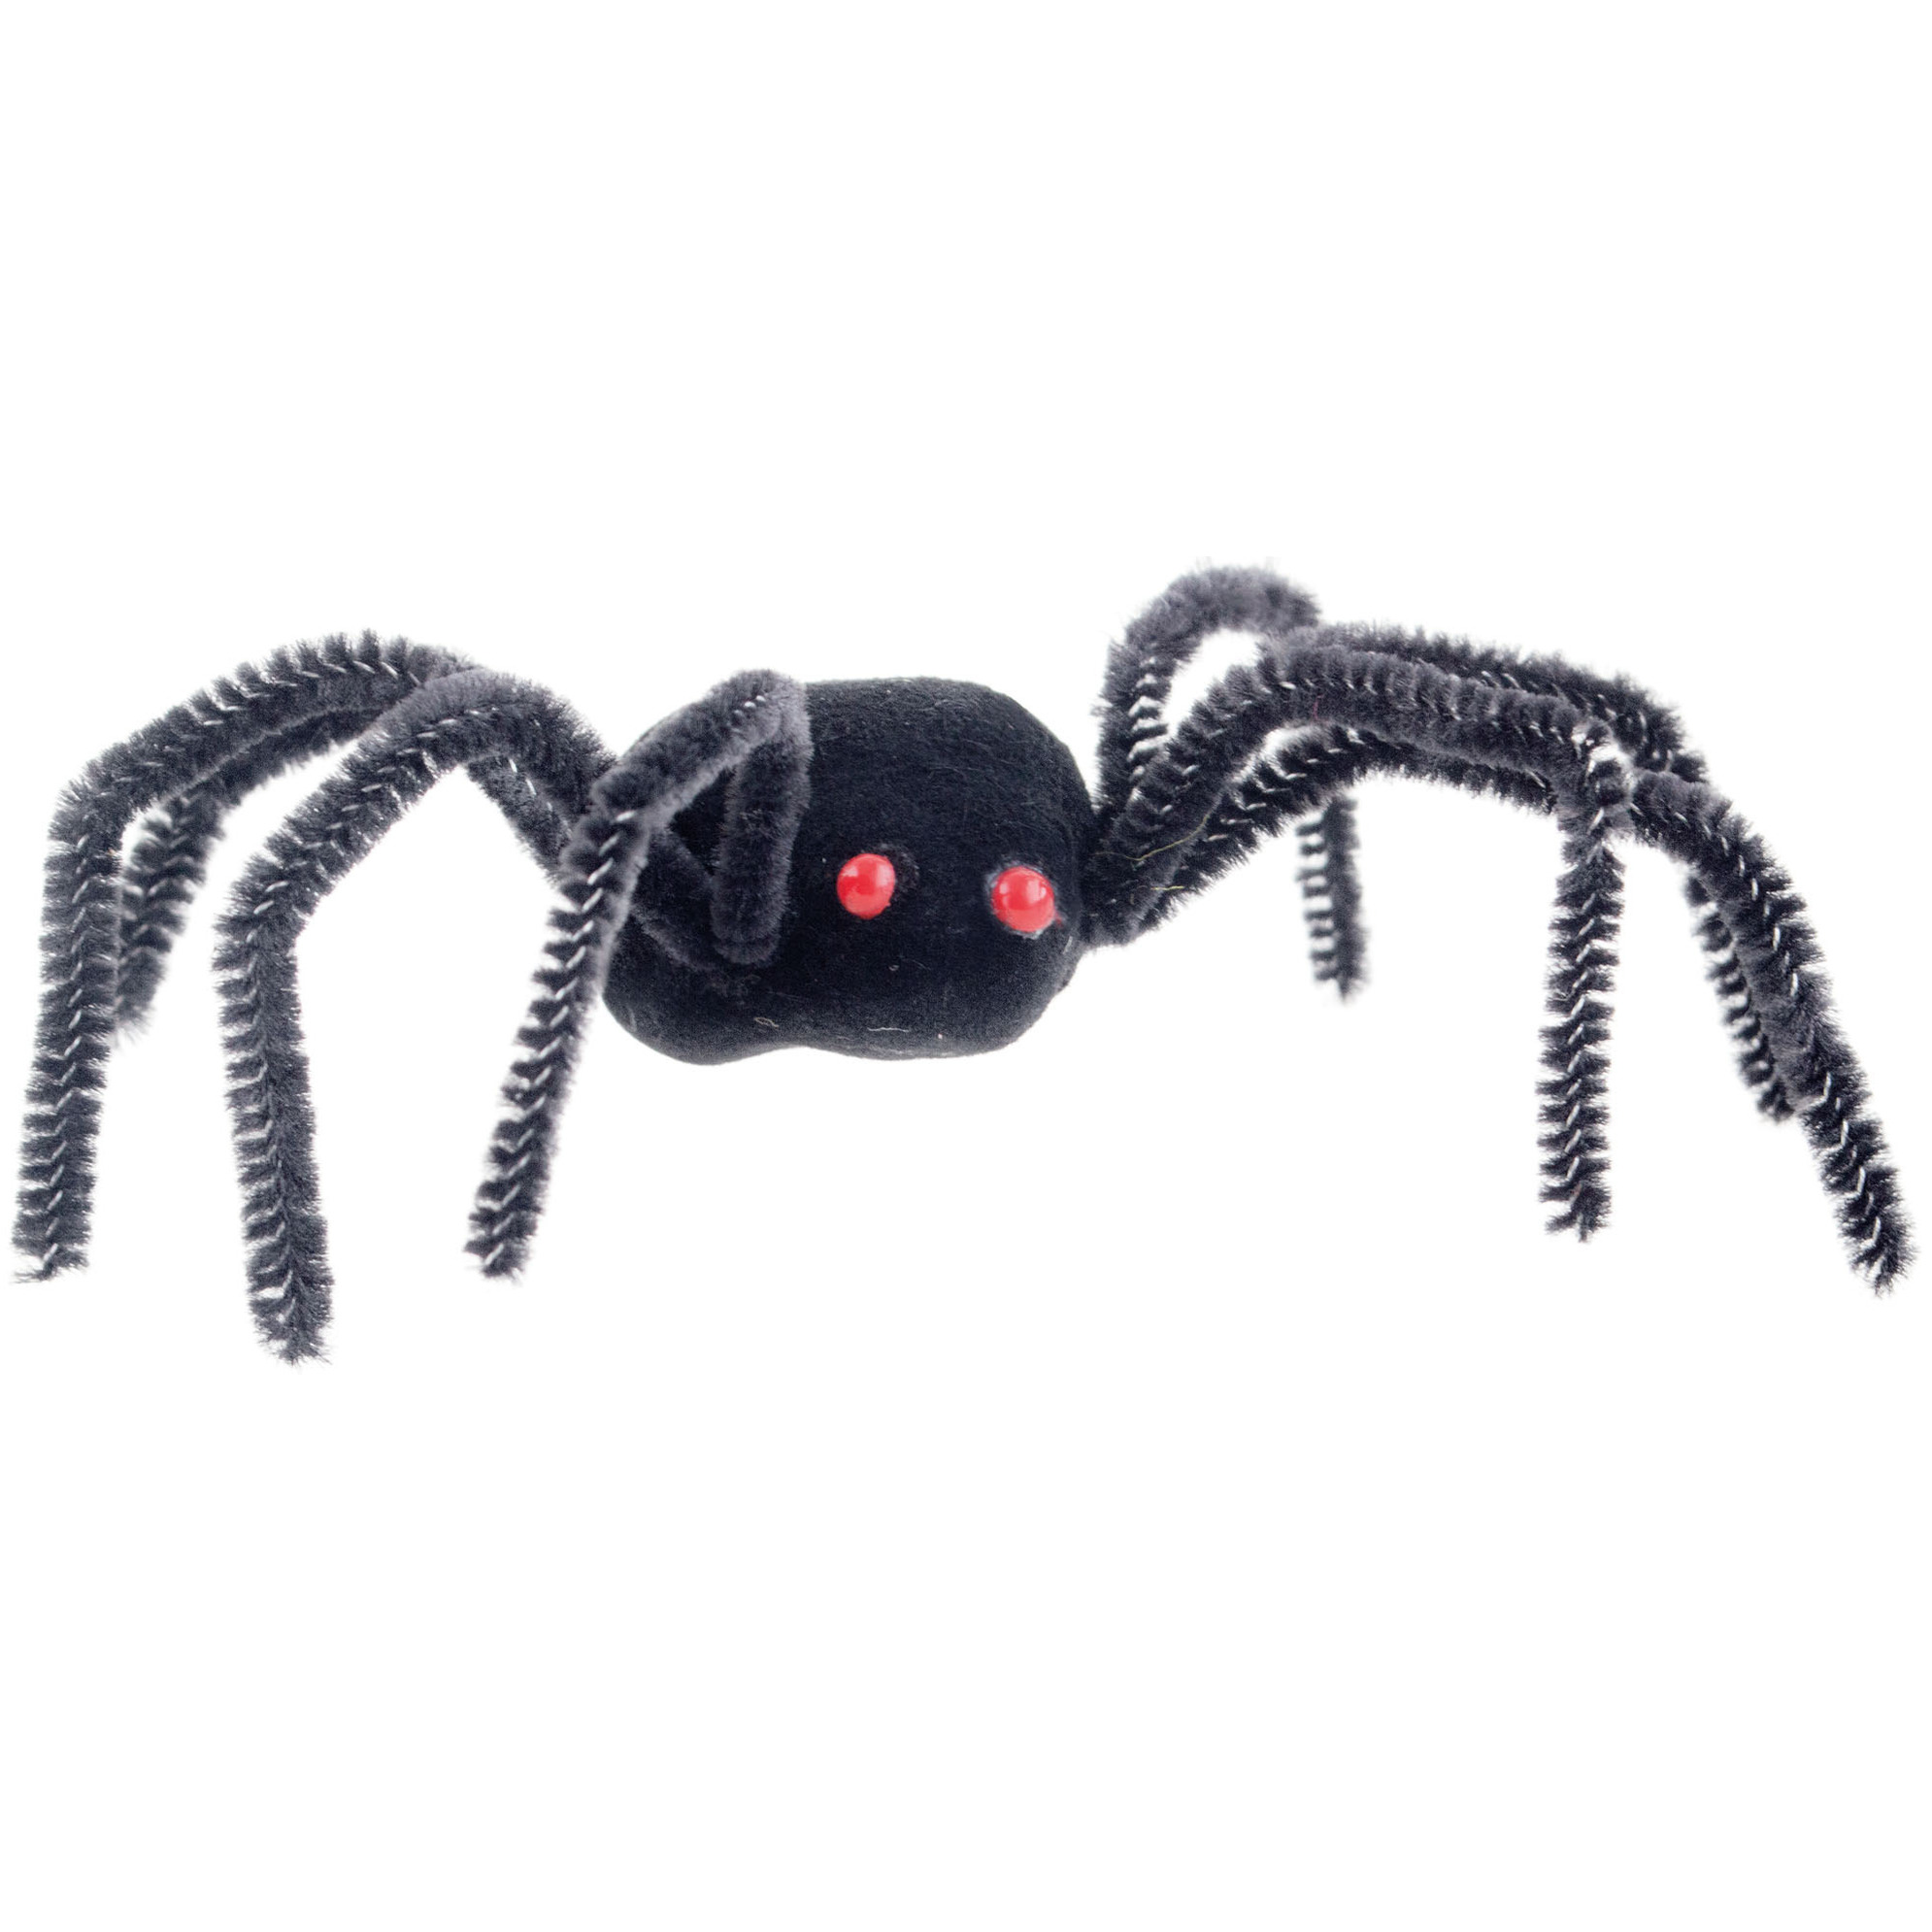 Enge Halloween nep-namaak spinnen set 4x stuks zwart plastic insecten-dieren